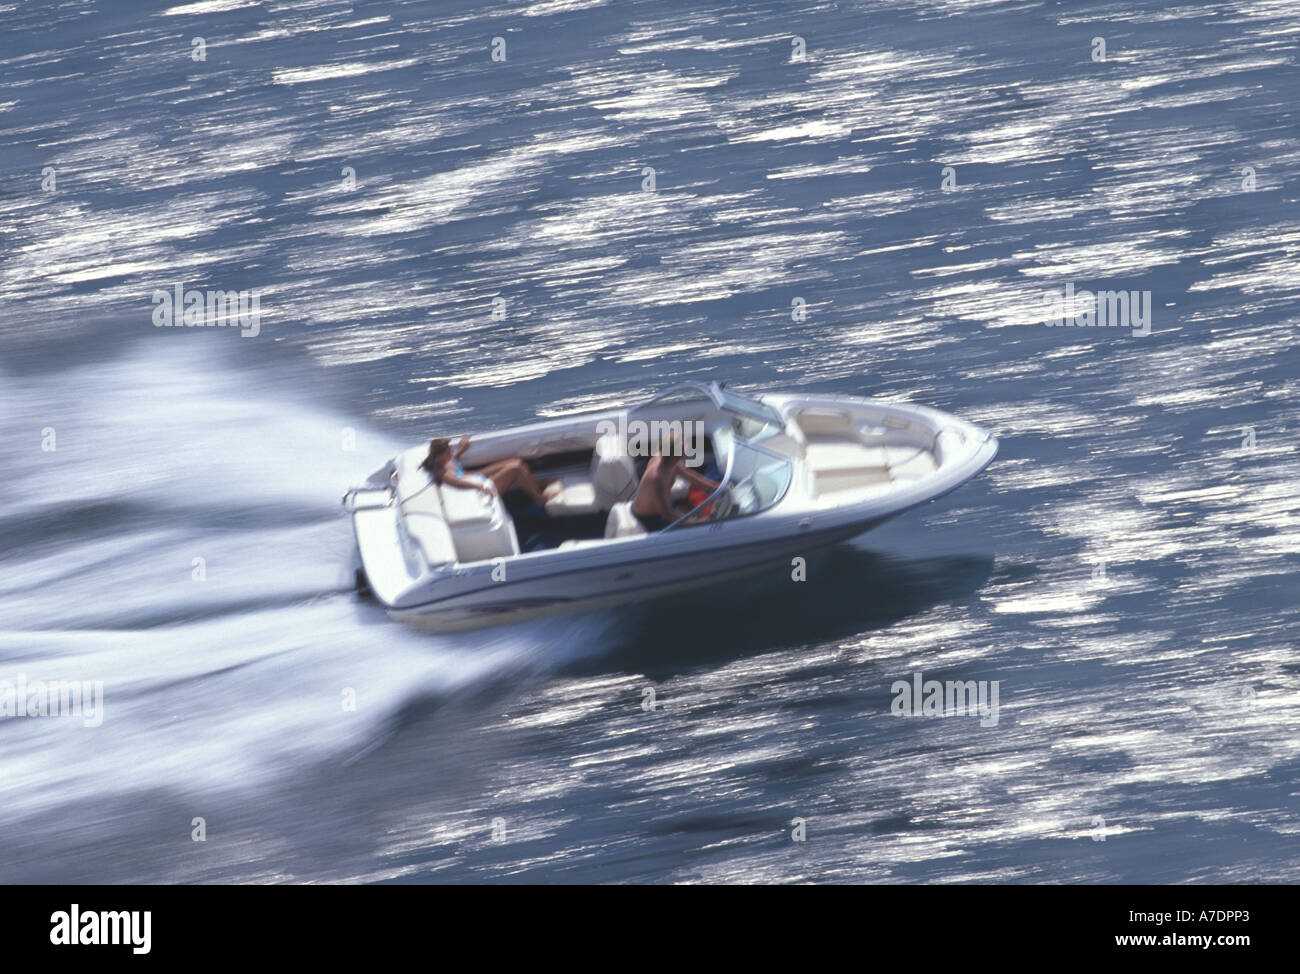 Speedboat racing across water Devon England Stock Photo